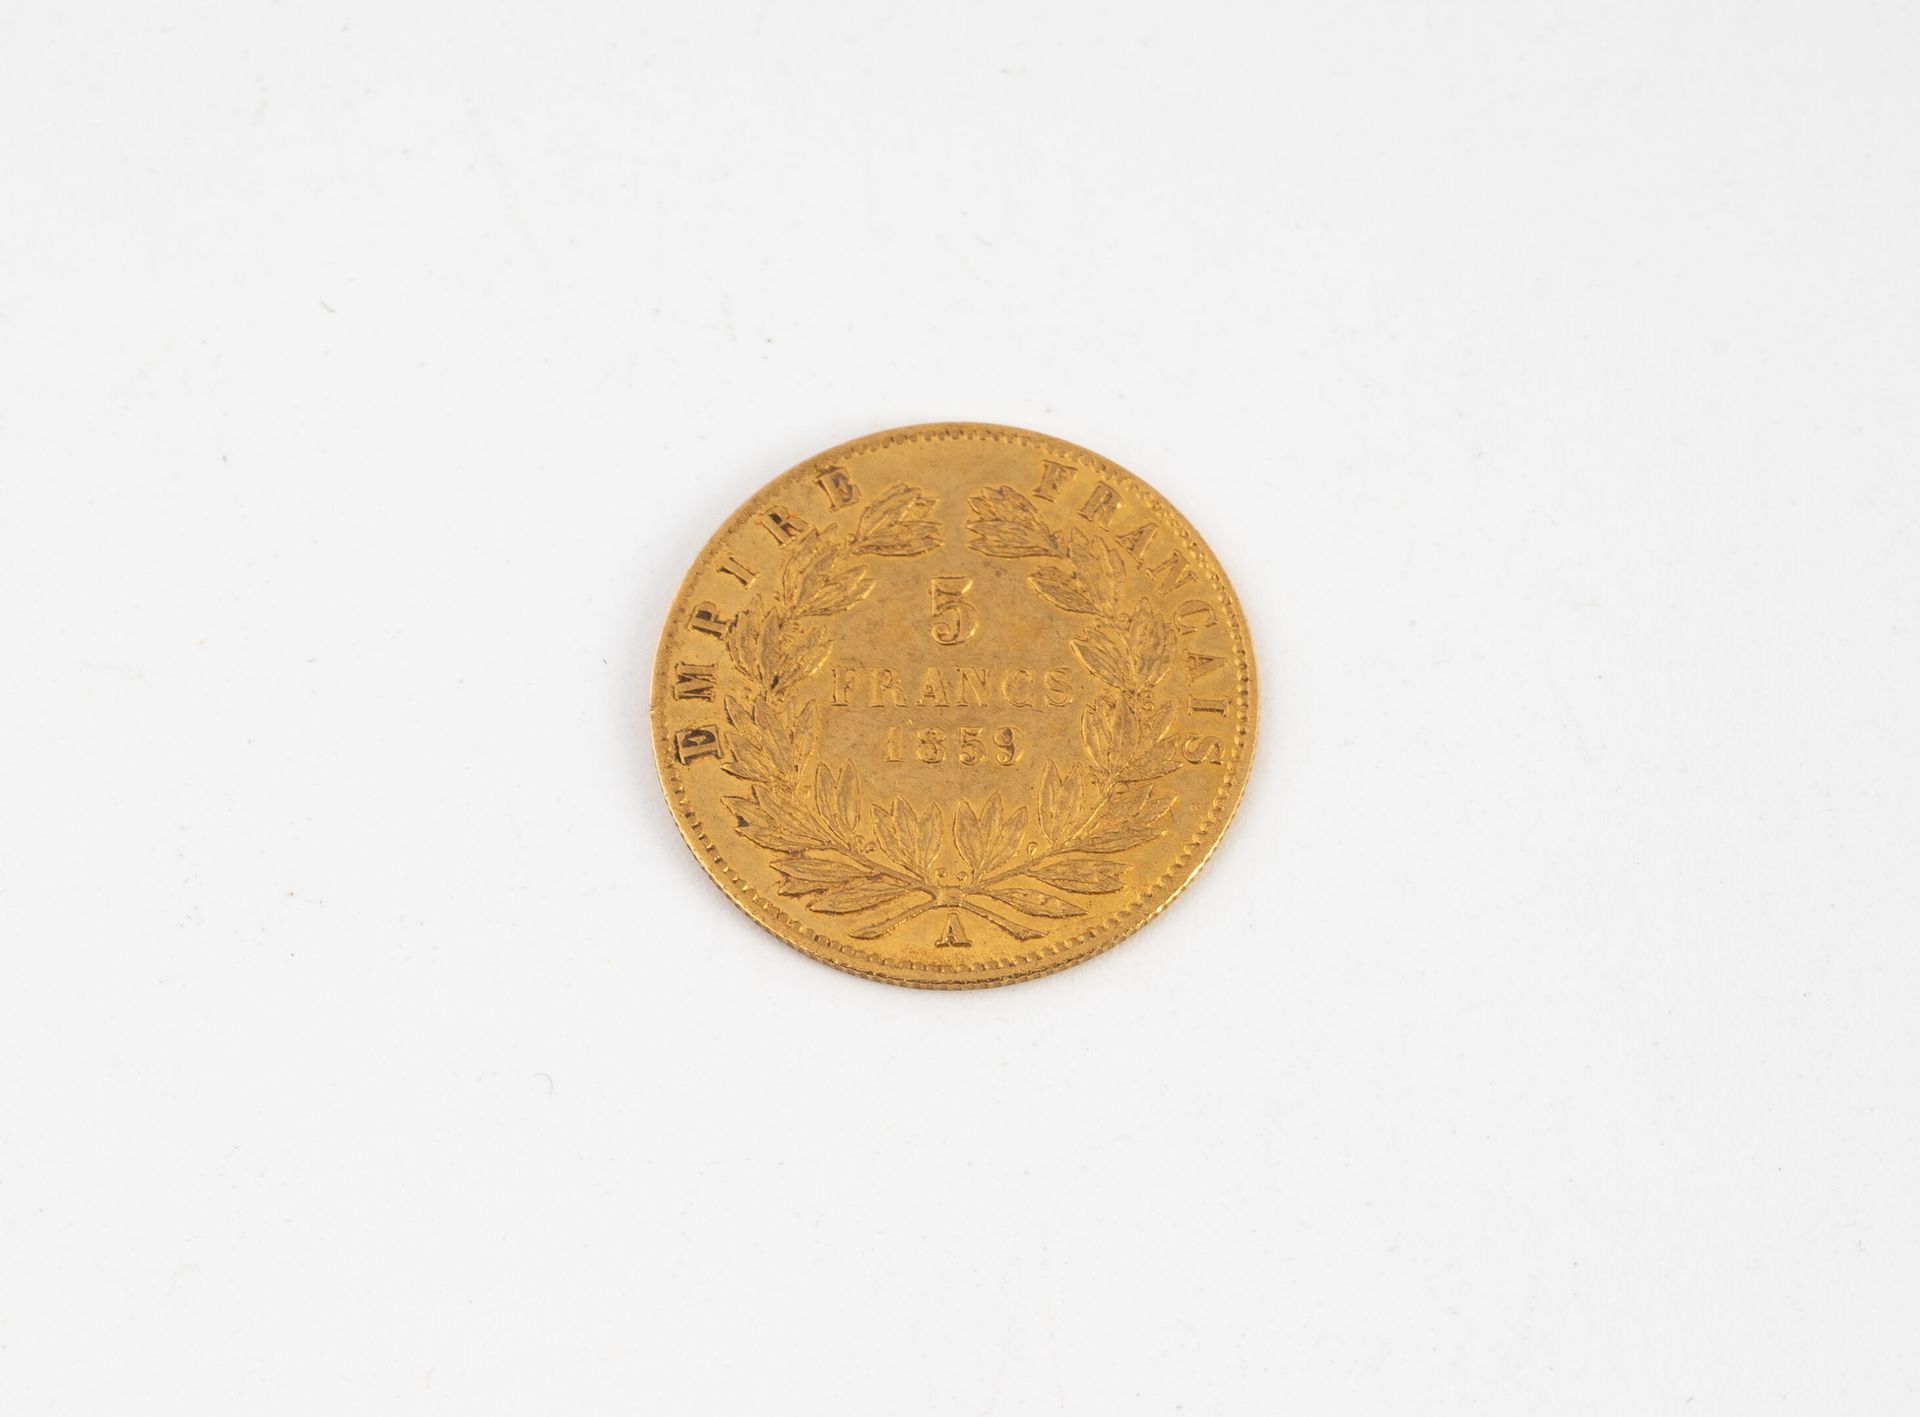 FRANCE 5-Franc-Goldmünze Napoleon III 1859.
Gewicht: 1,59 g.
Kratzer und Abnutzu&hellip;